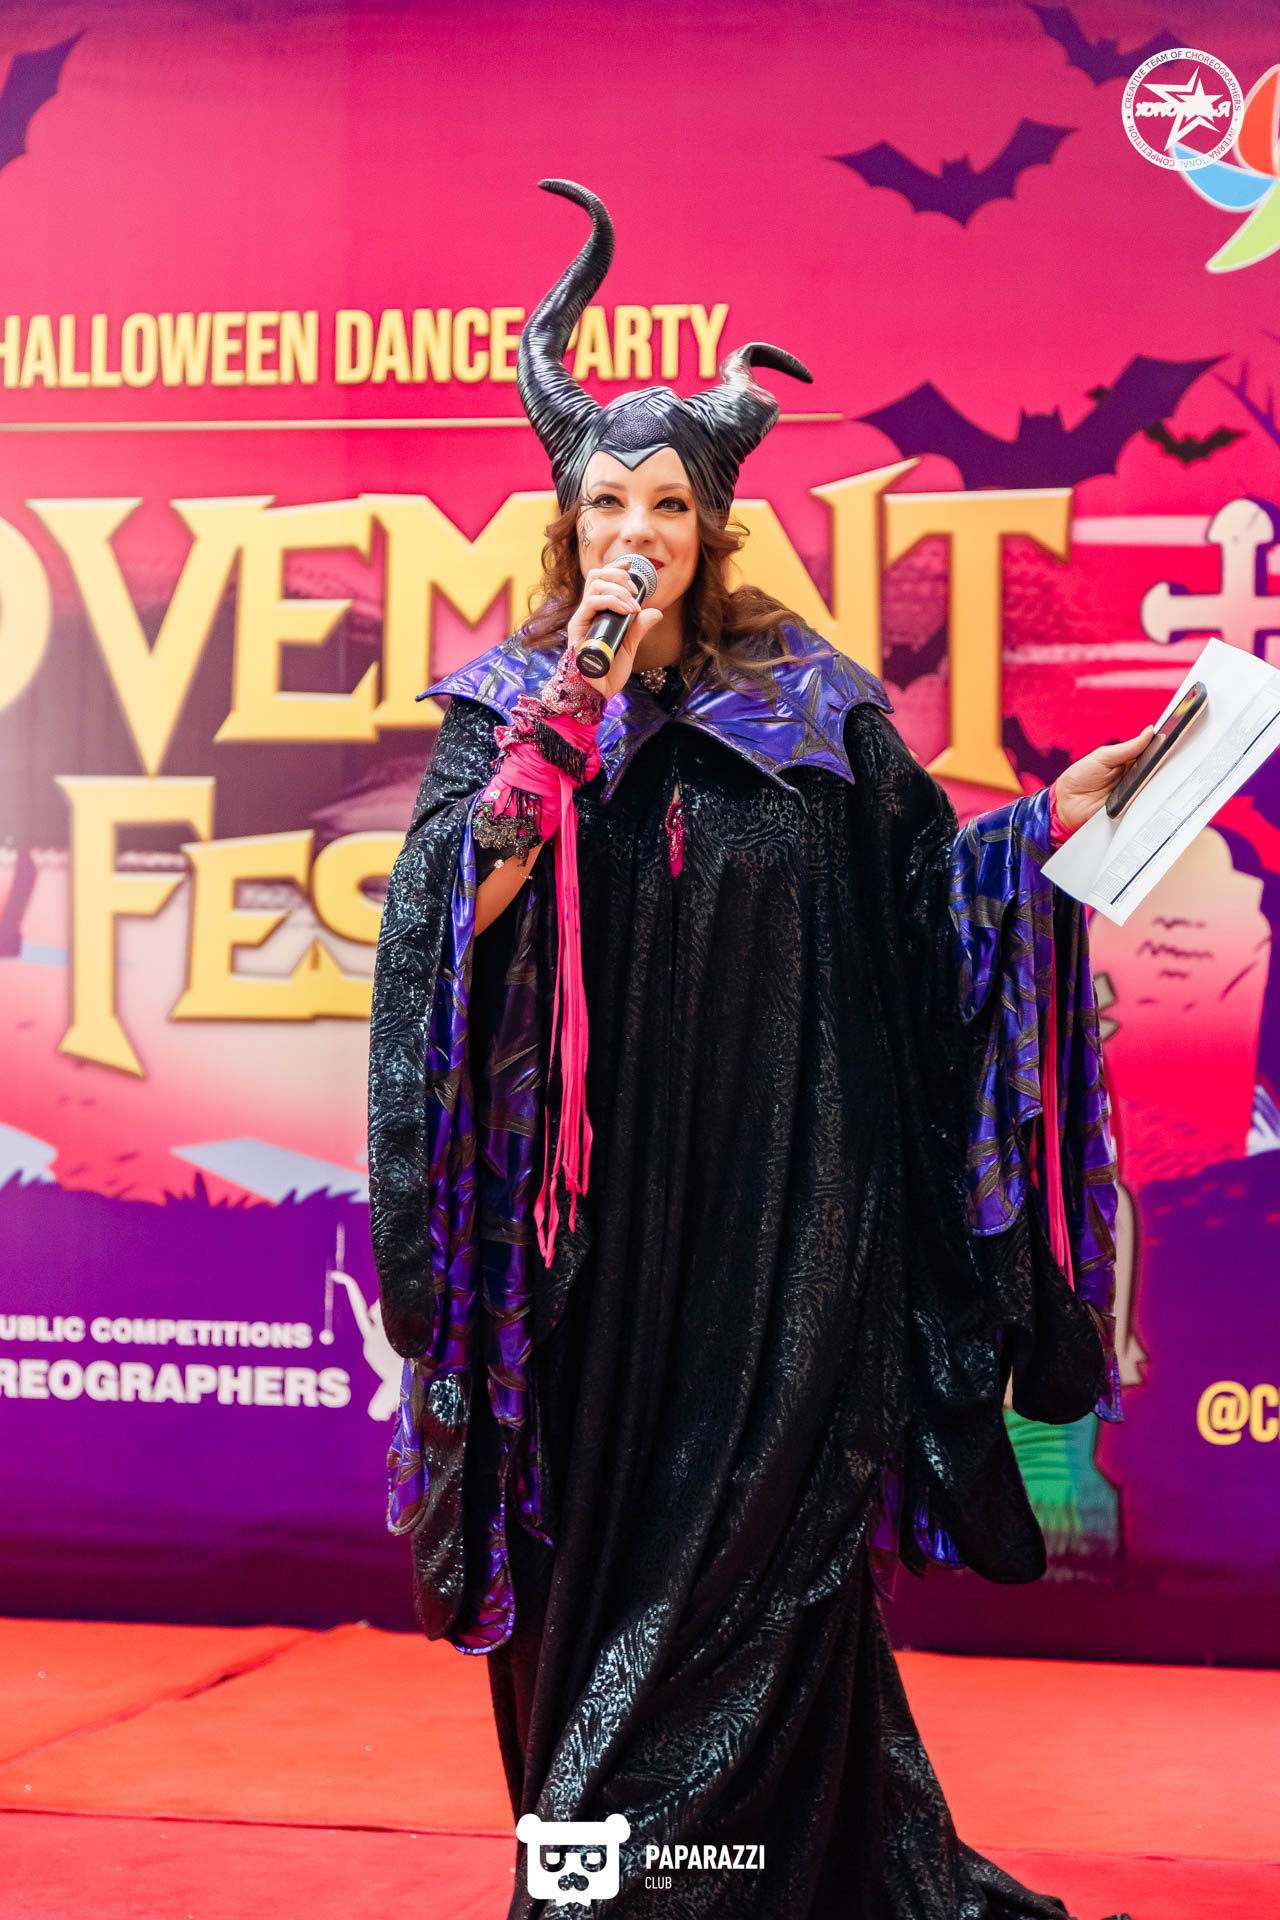 VII Республиканский Конкурс-Фестиваль по всем видам танцевального искусства  "MOVEMENT FEST"